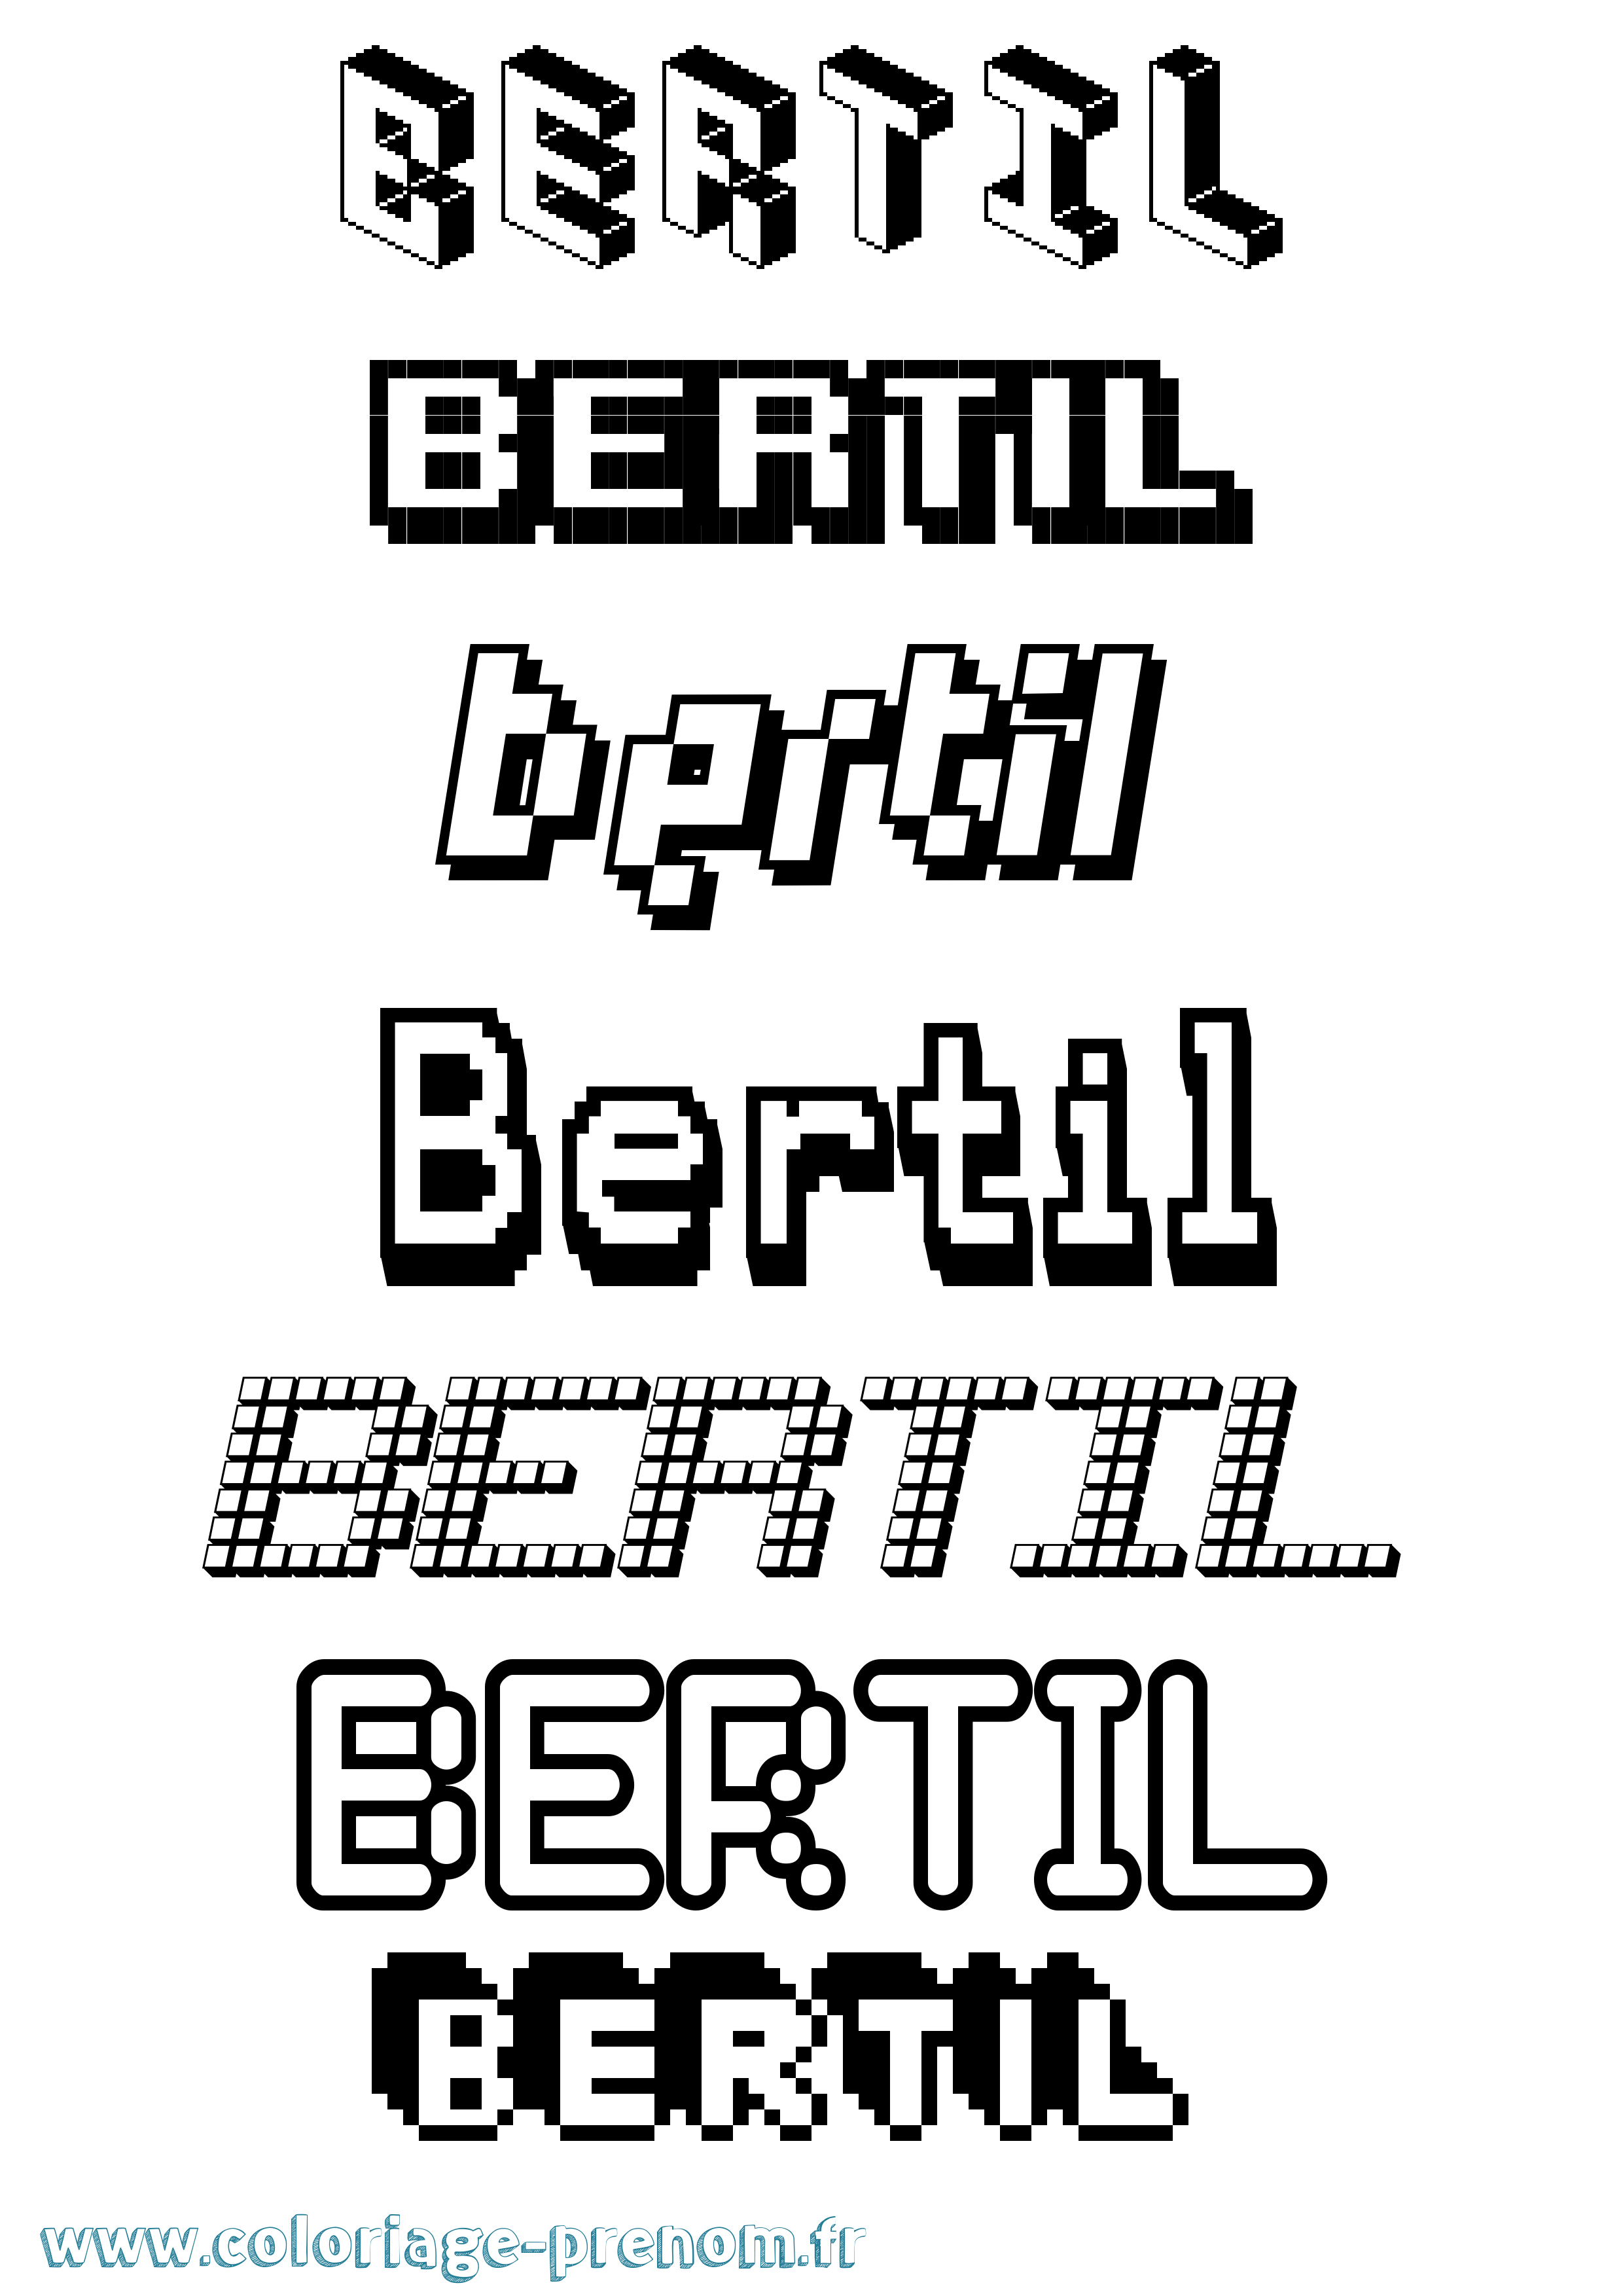 Coloriage prénom Bertil Pixel